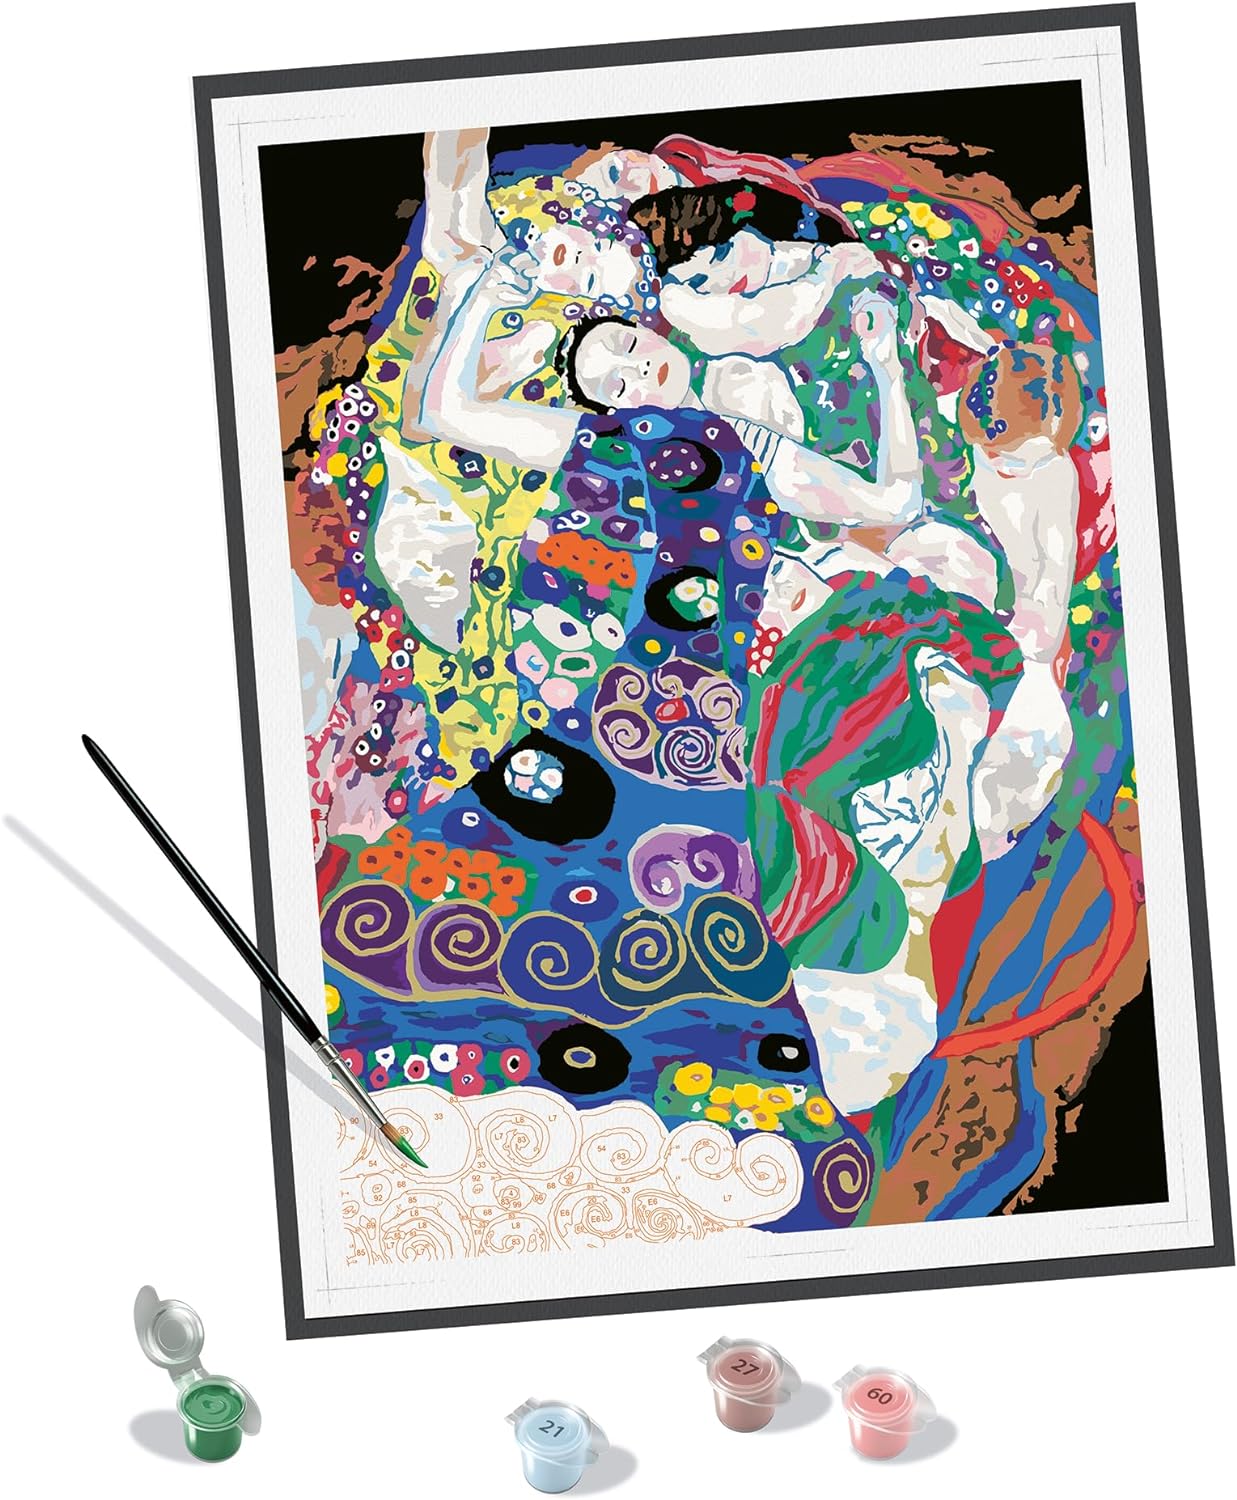 Ravensburger - CreArt Regione Jungfrau in Svizzera, Kit per Dipingere con i  Numeri, Contiene Tavola Prestampata 24x30 cm, Pennello, Colori e Accessori,  Gioco Creativo e Relax per Adulti 14+ Anni a 19,99 €